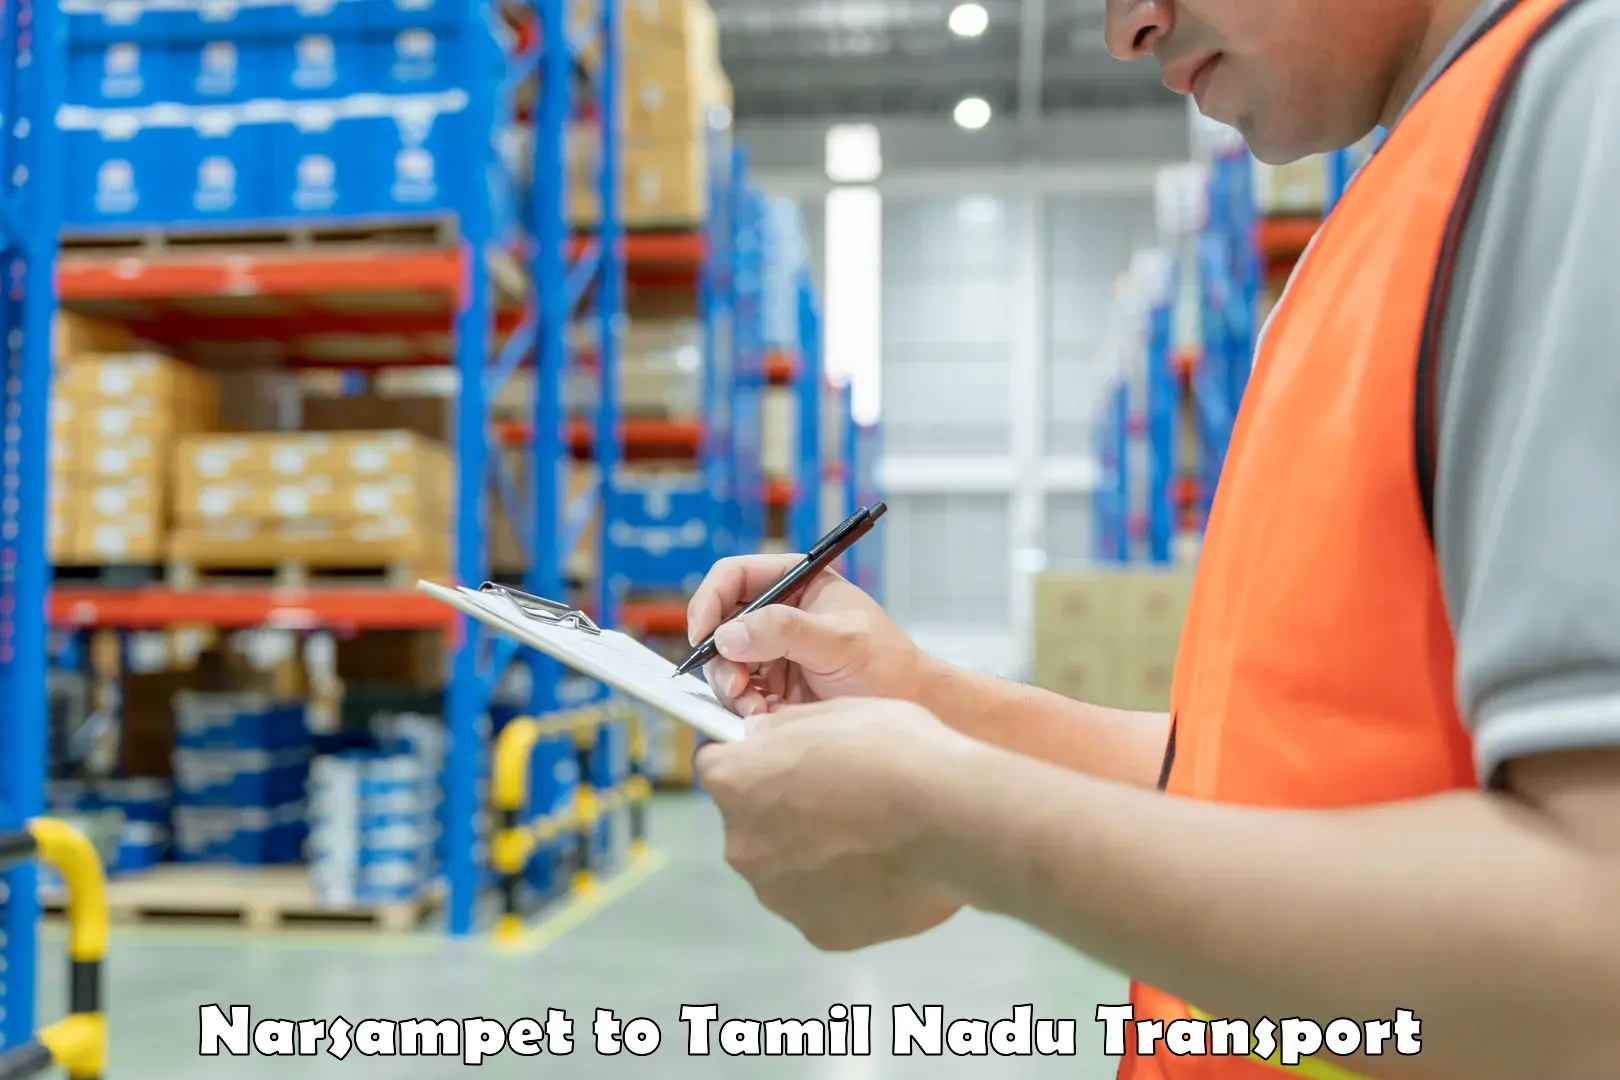 Land transport services Narsampet to Tallakulam